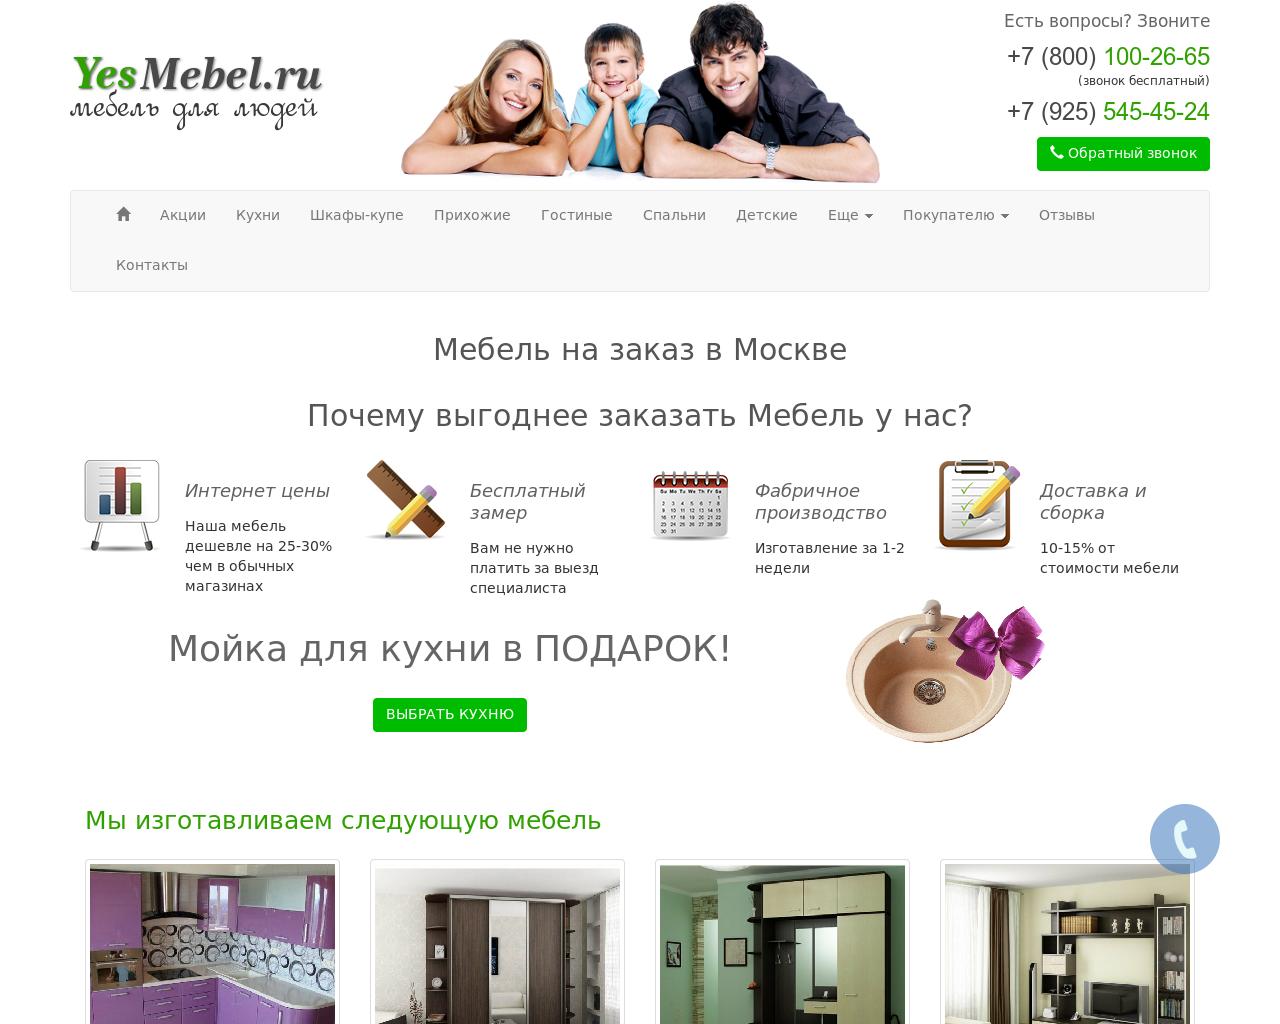 Изображение сайта yesmebel.ru в разрешении 1280x1024